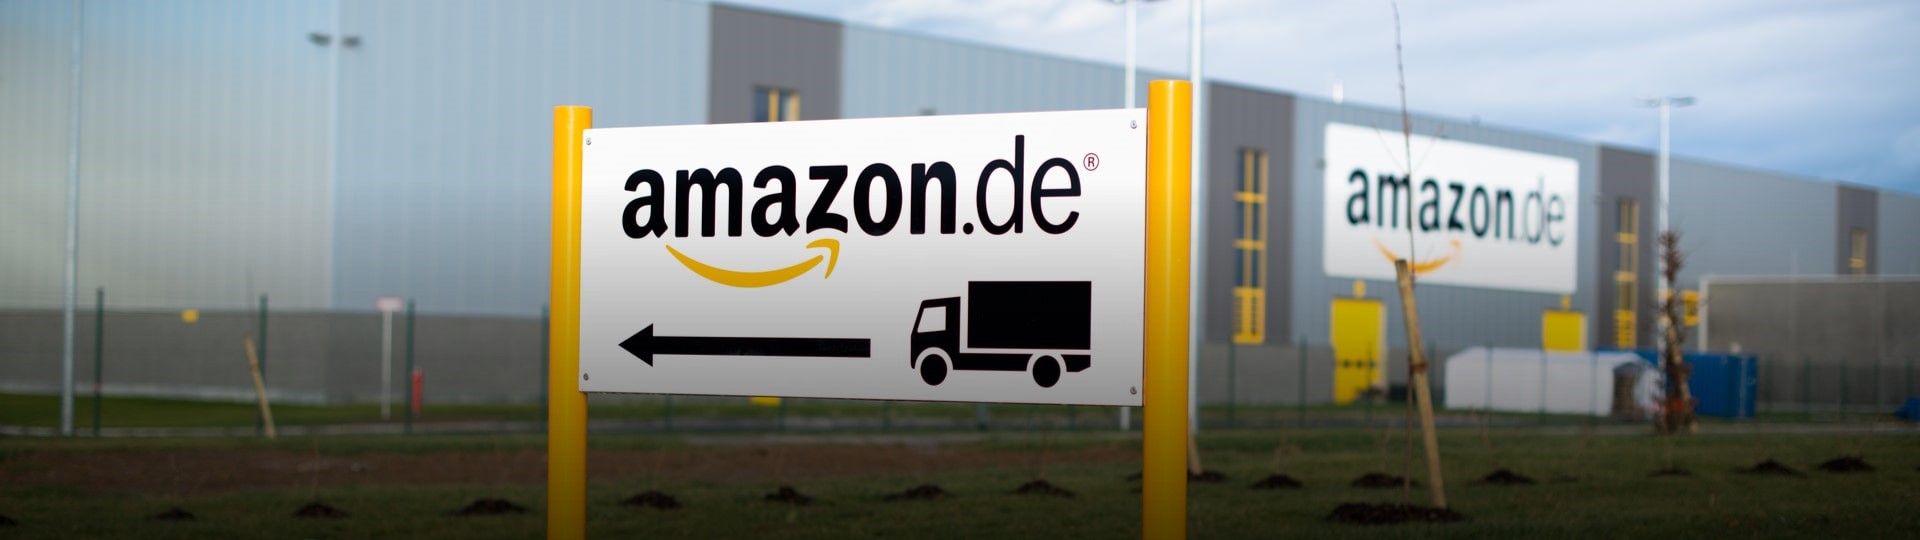 Amazon chce zvýšit počet zaměstnanců v Německu o 20 procent